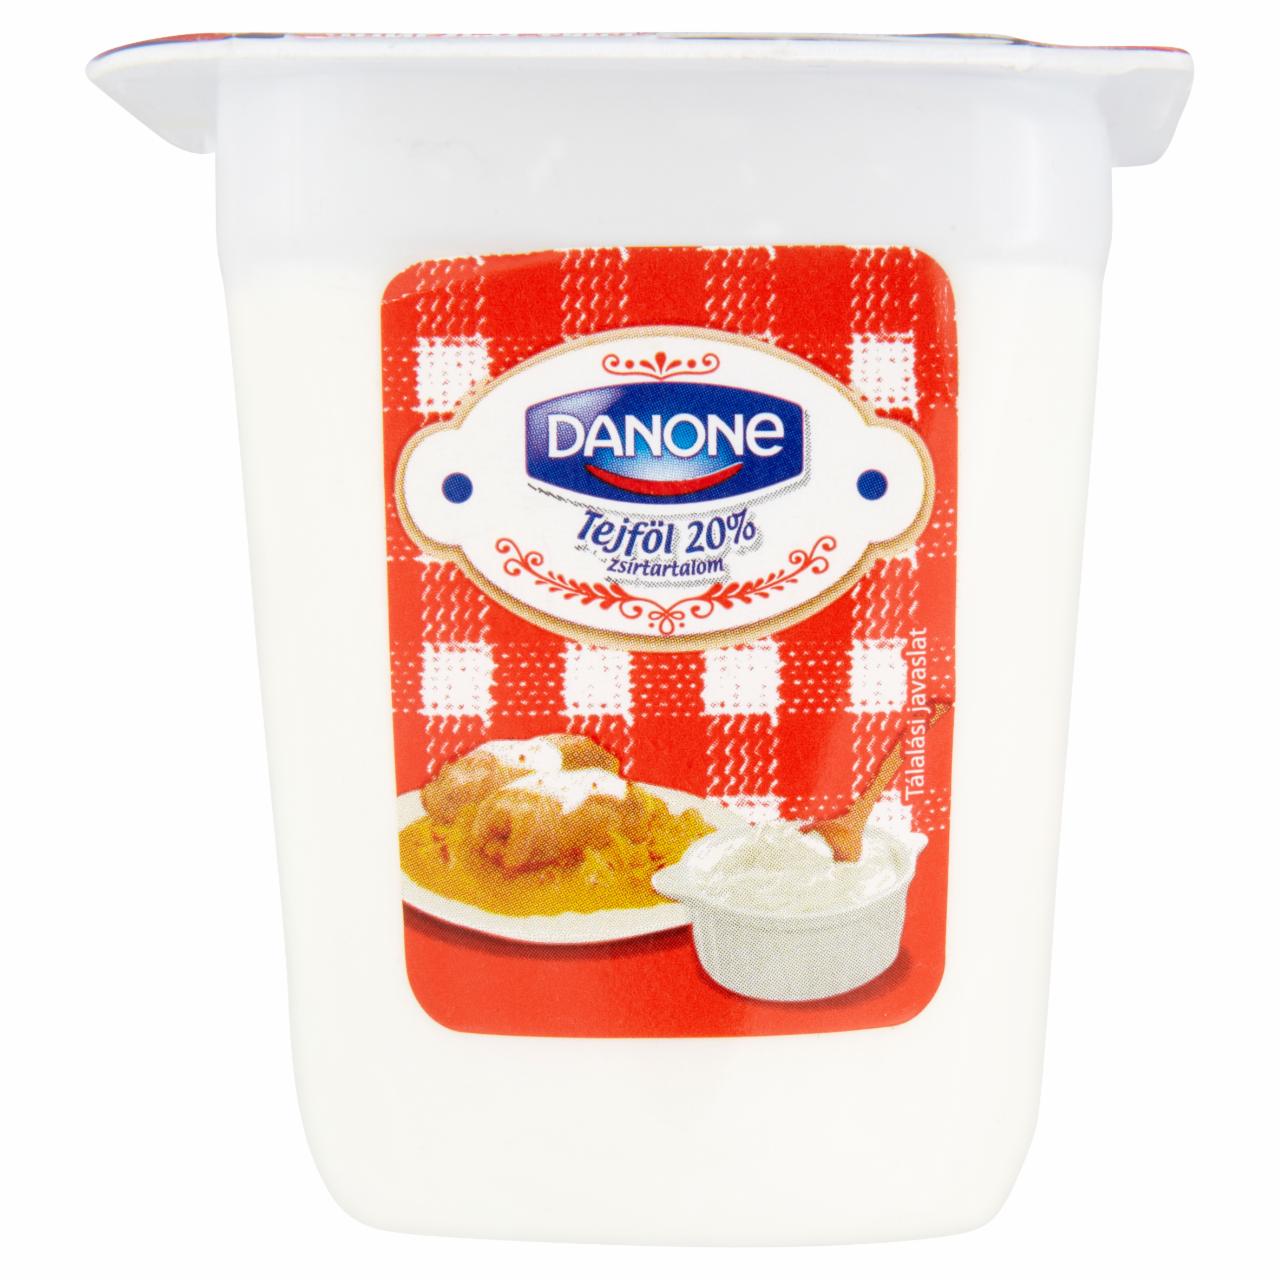 Képek - Danone tejföl 140 g